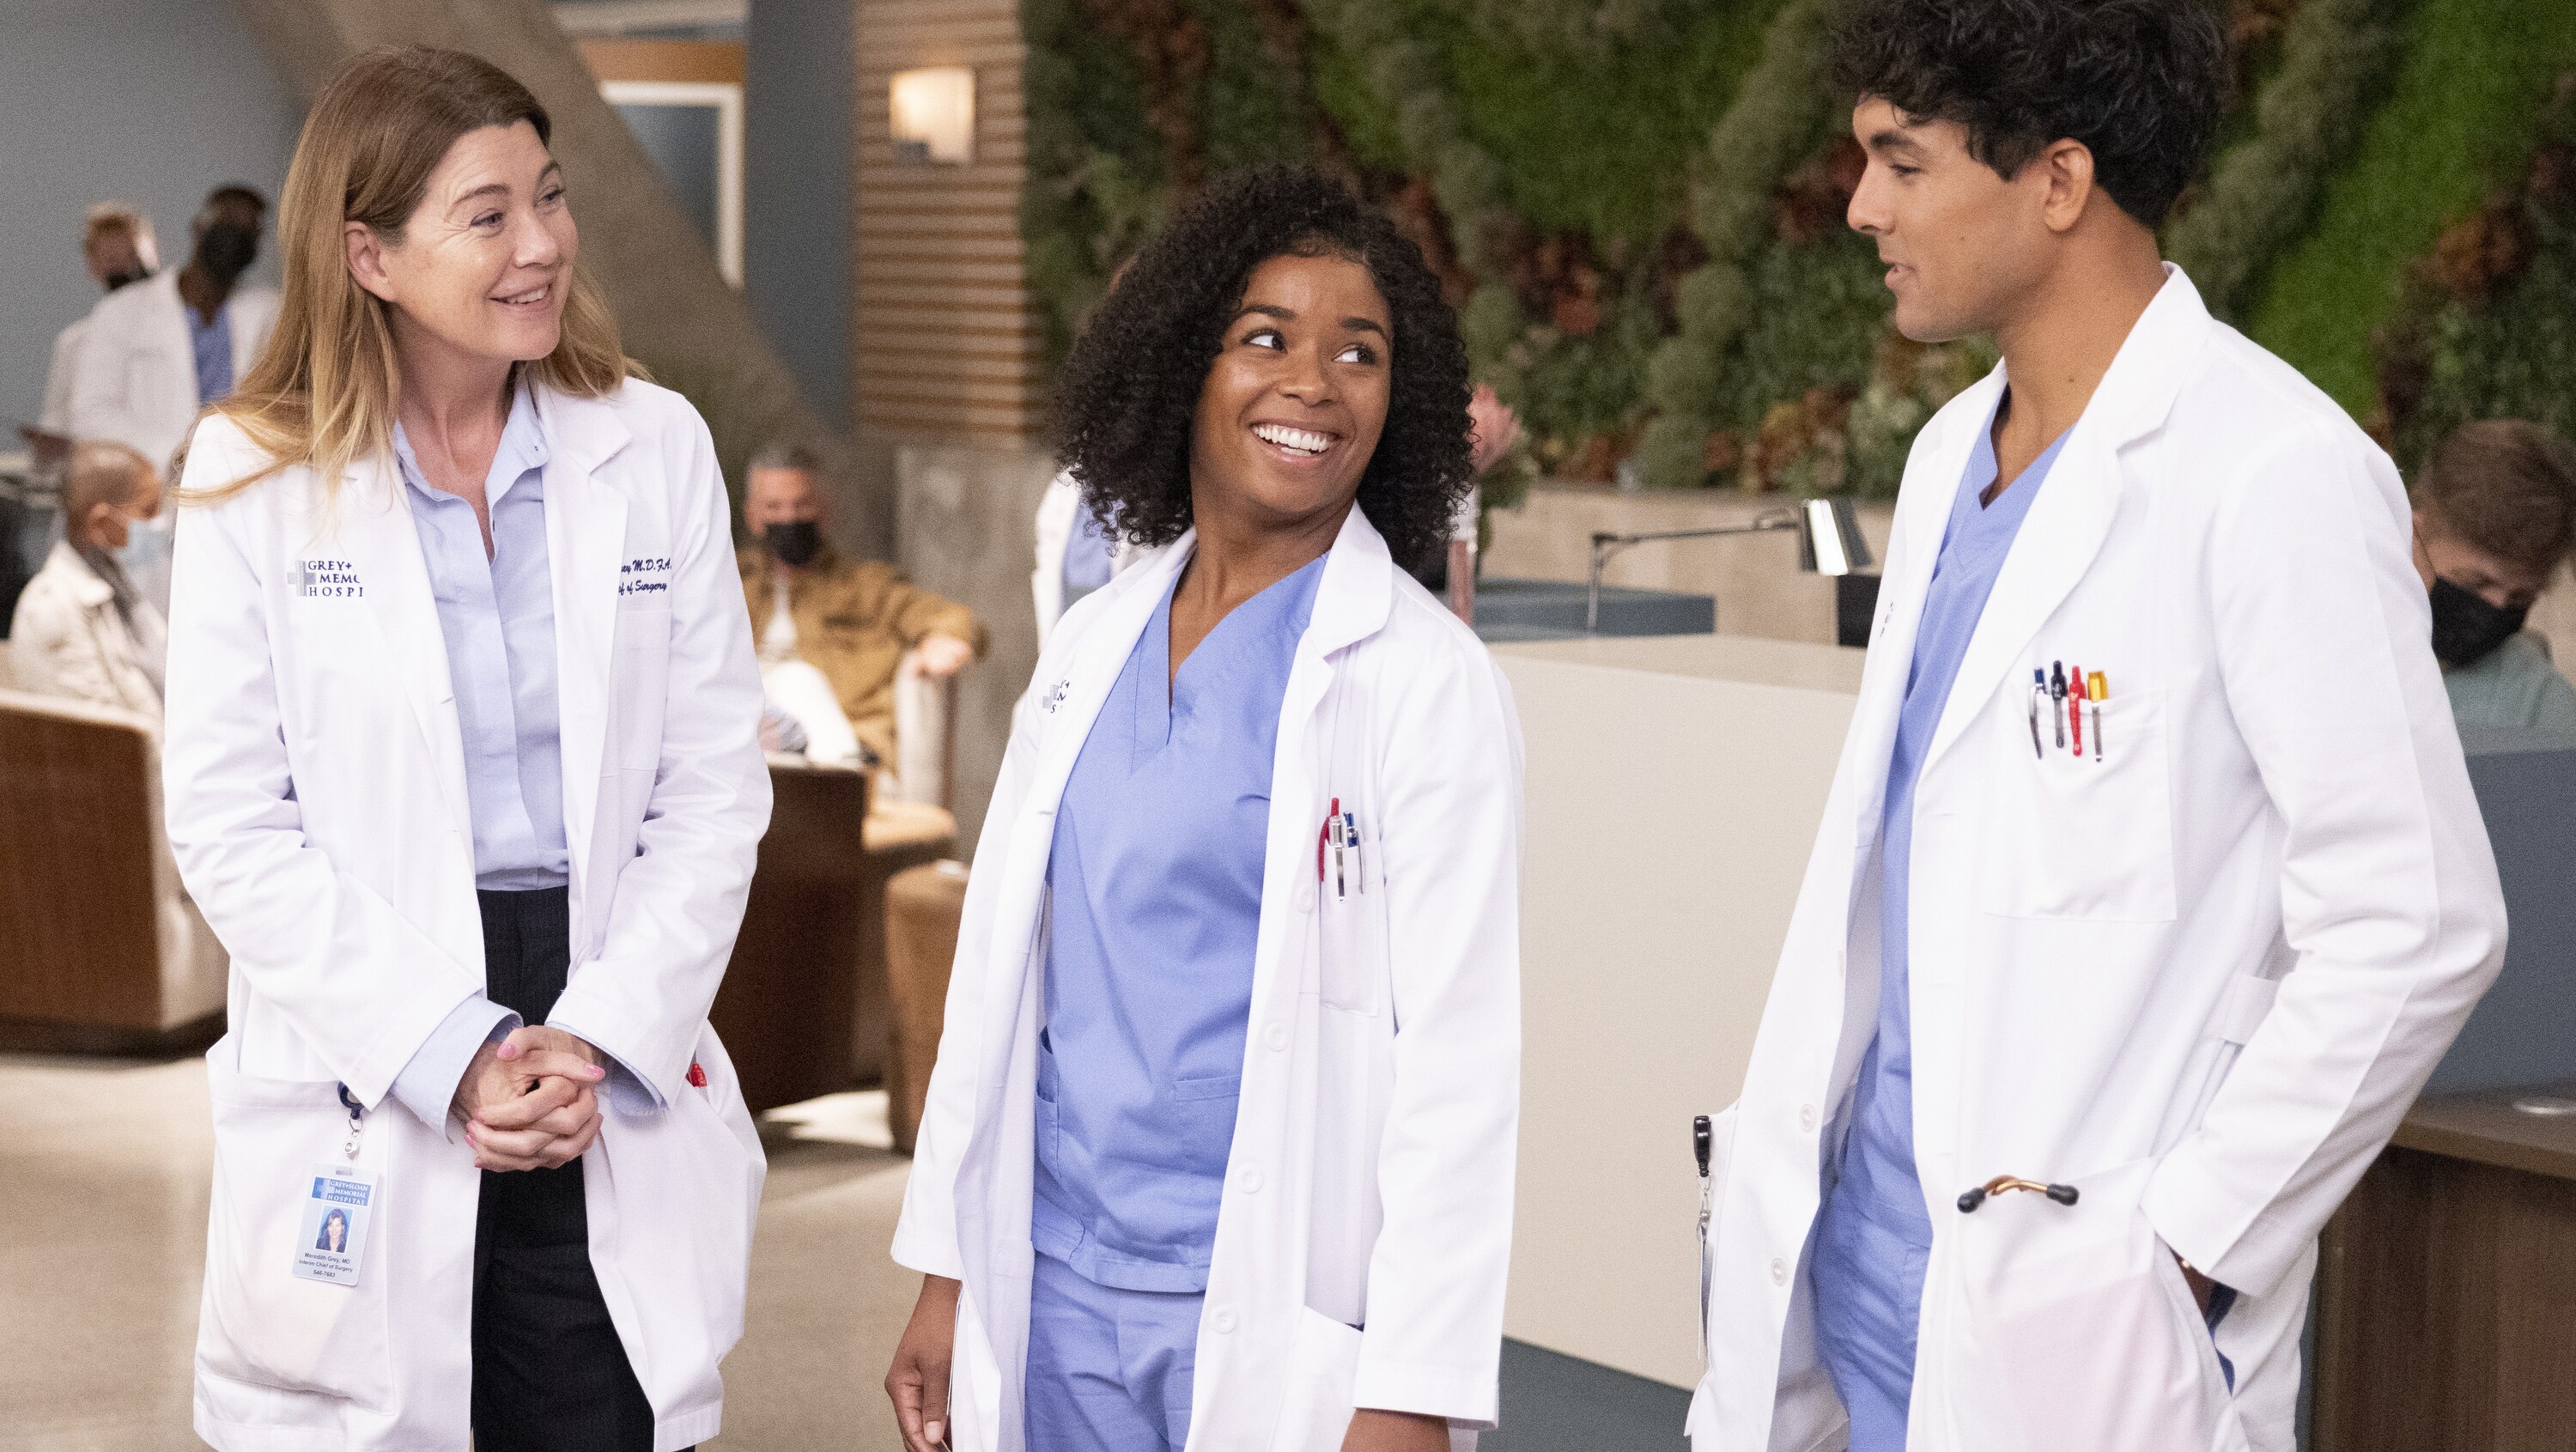 Nadchodzi 19. sezon serialu Grey’s Anatomy: Chirurdzy. Premiera 8 marca, wyłącznie na kanale FOX